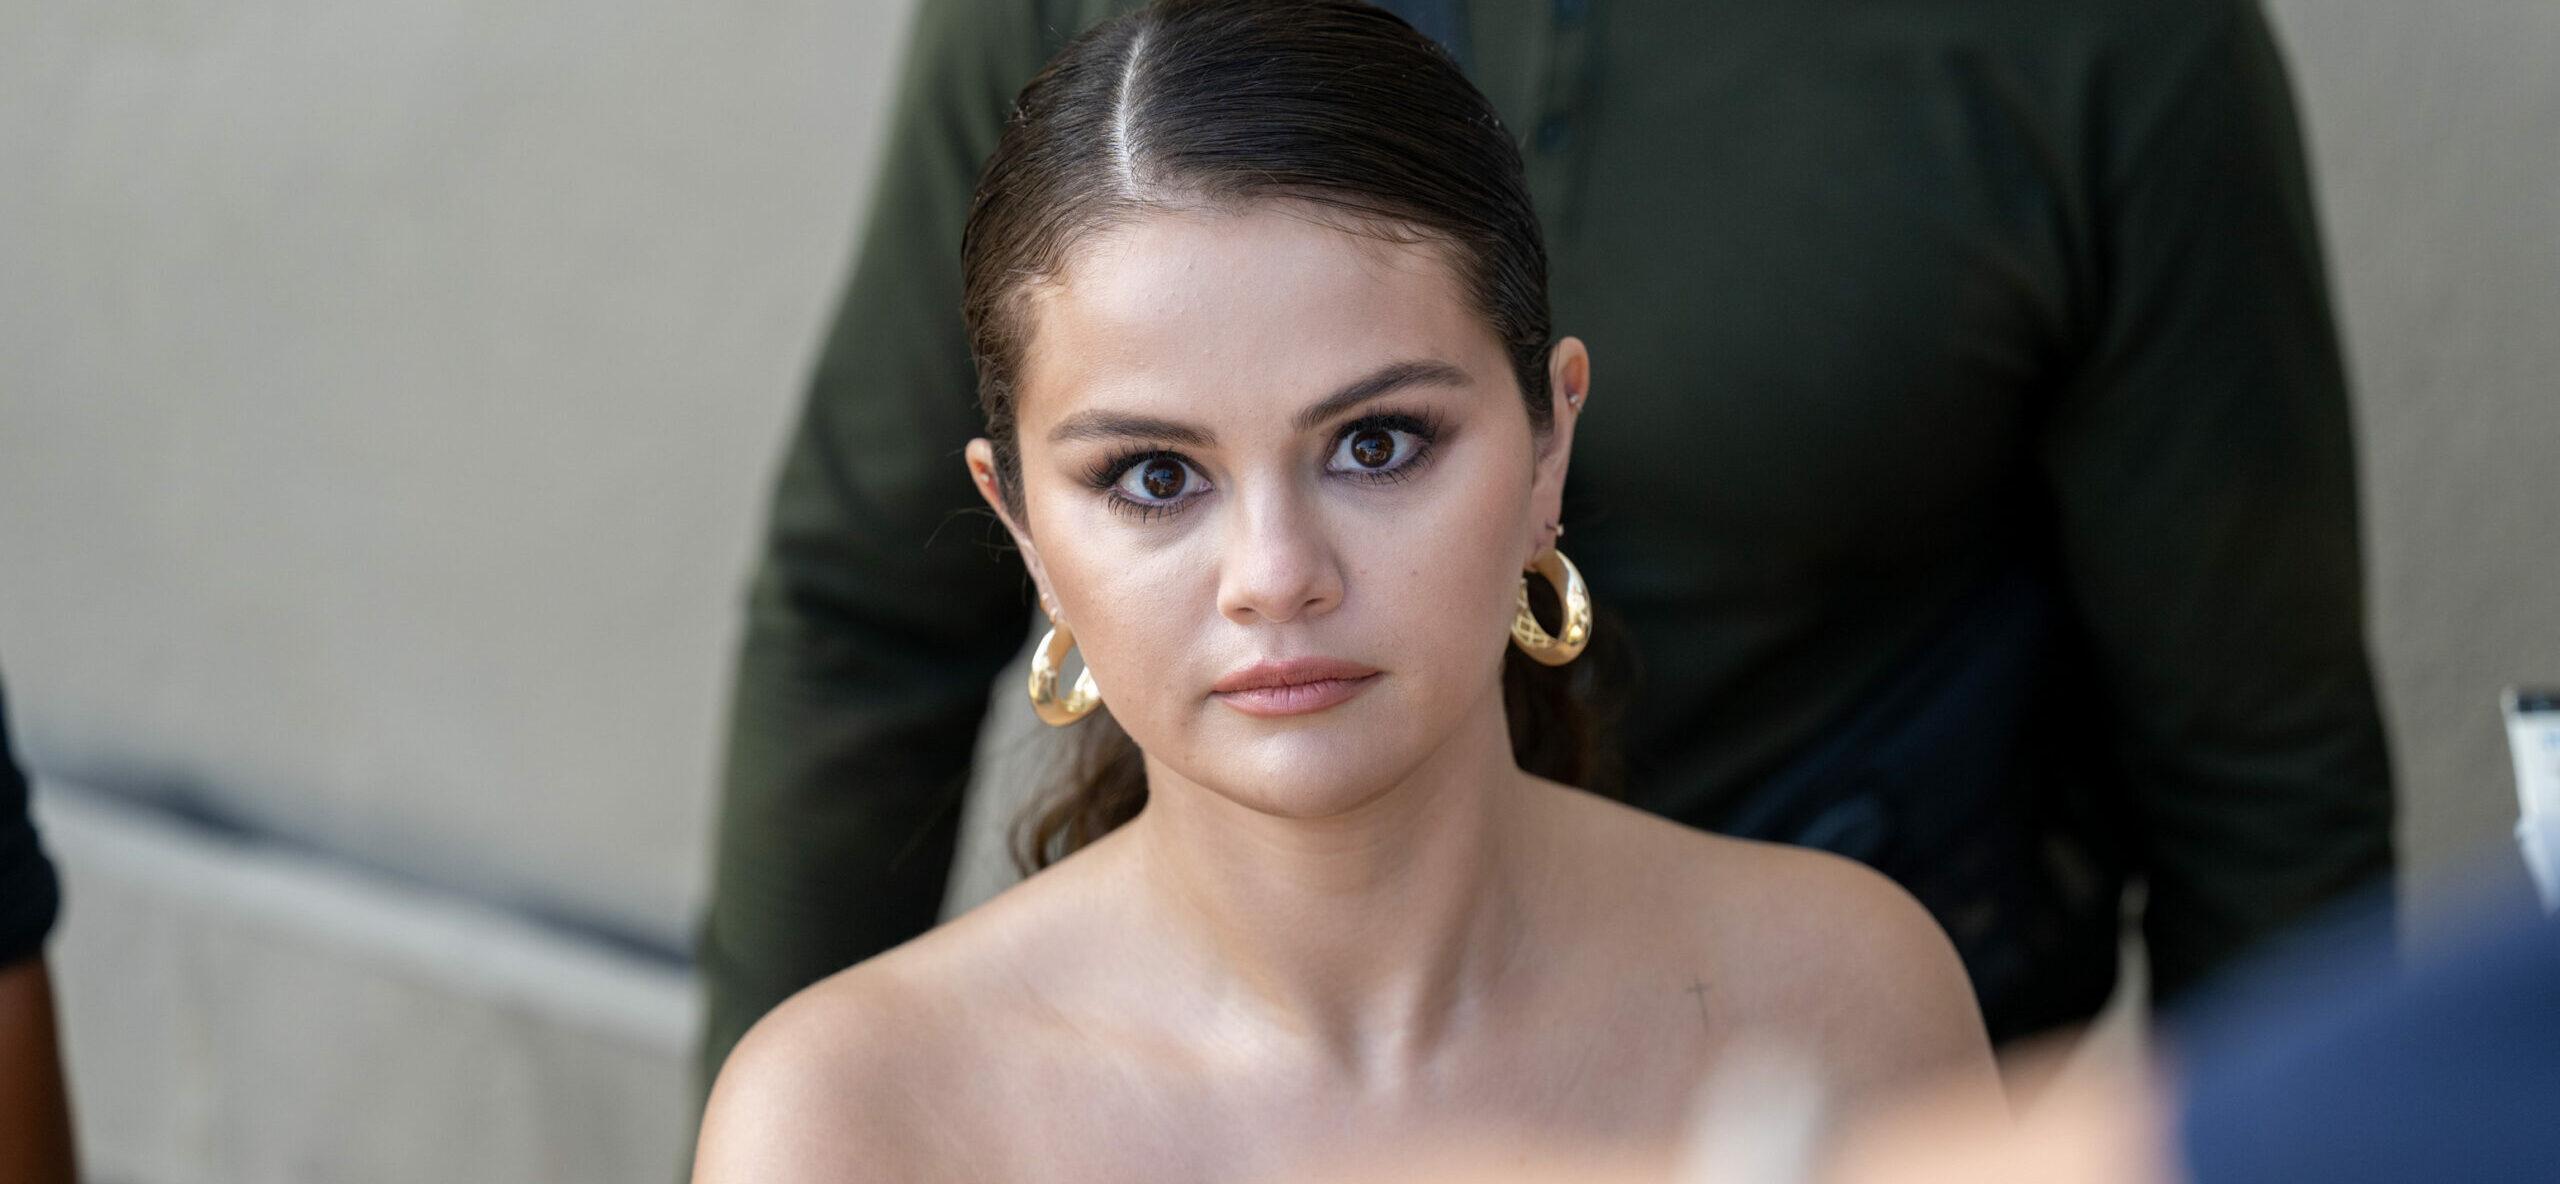 Selena Gomez at Kimmel